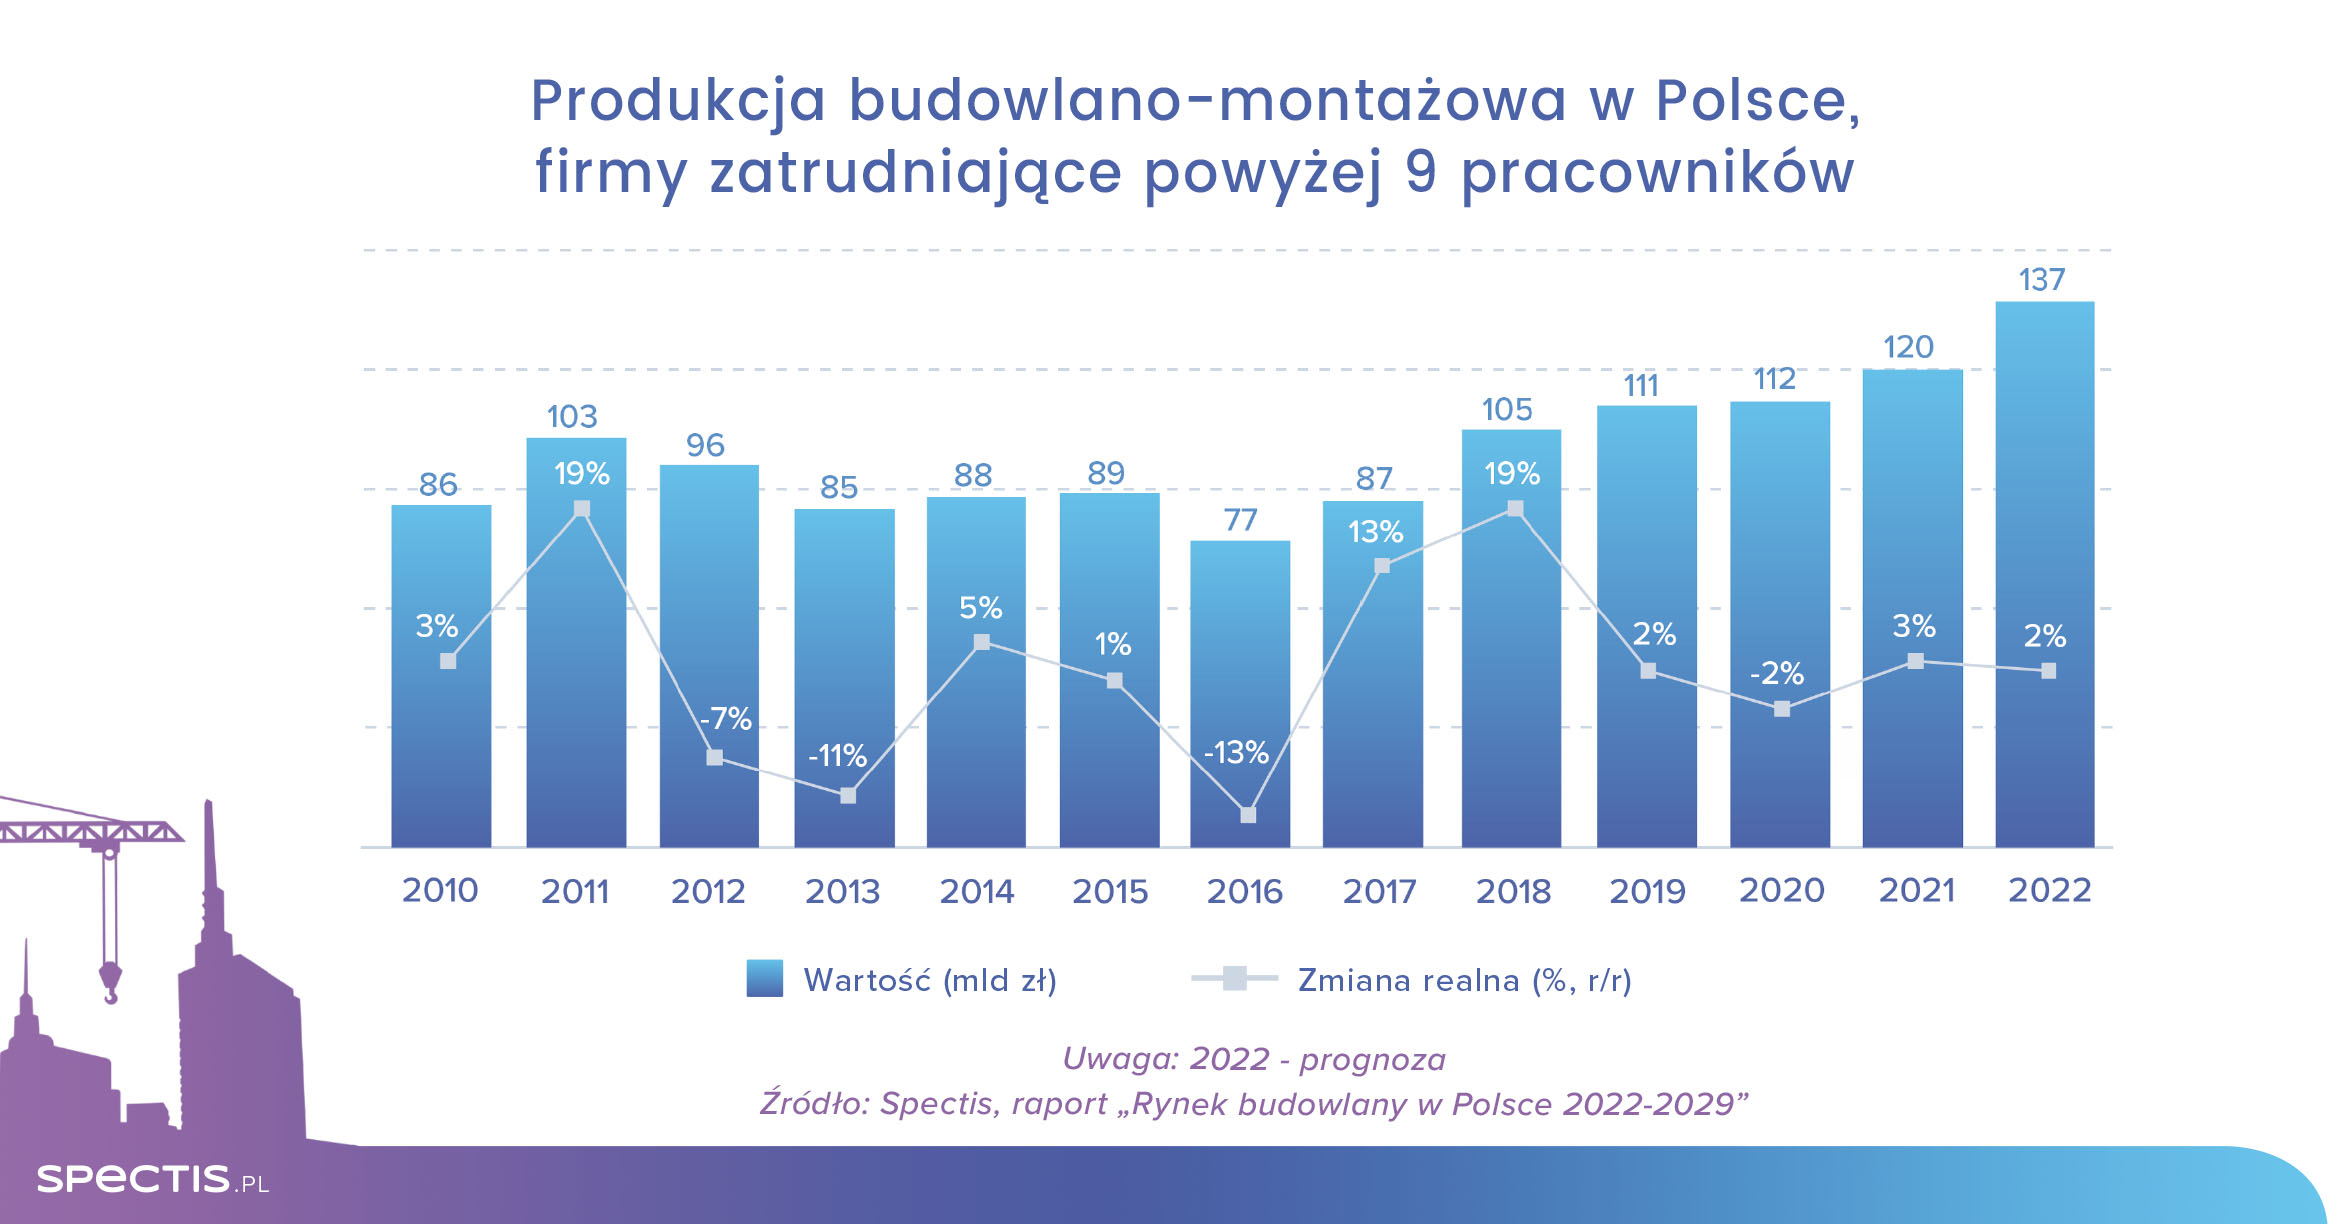 Rynek budowlany w Polsce w 2022 r. wzrośnie o 2%